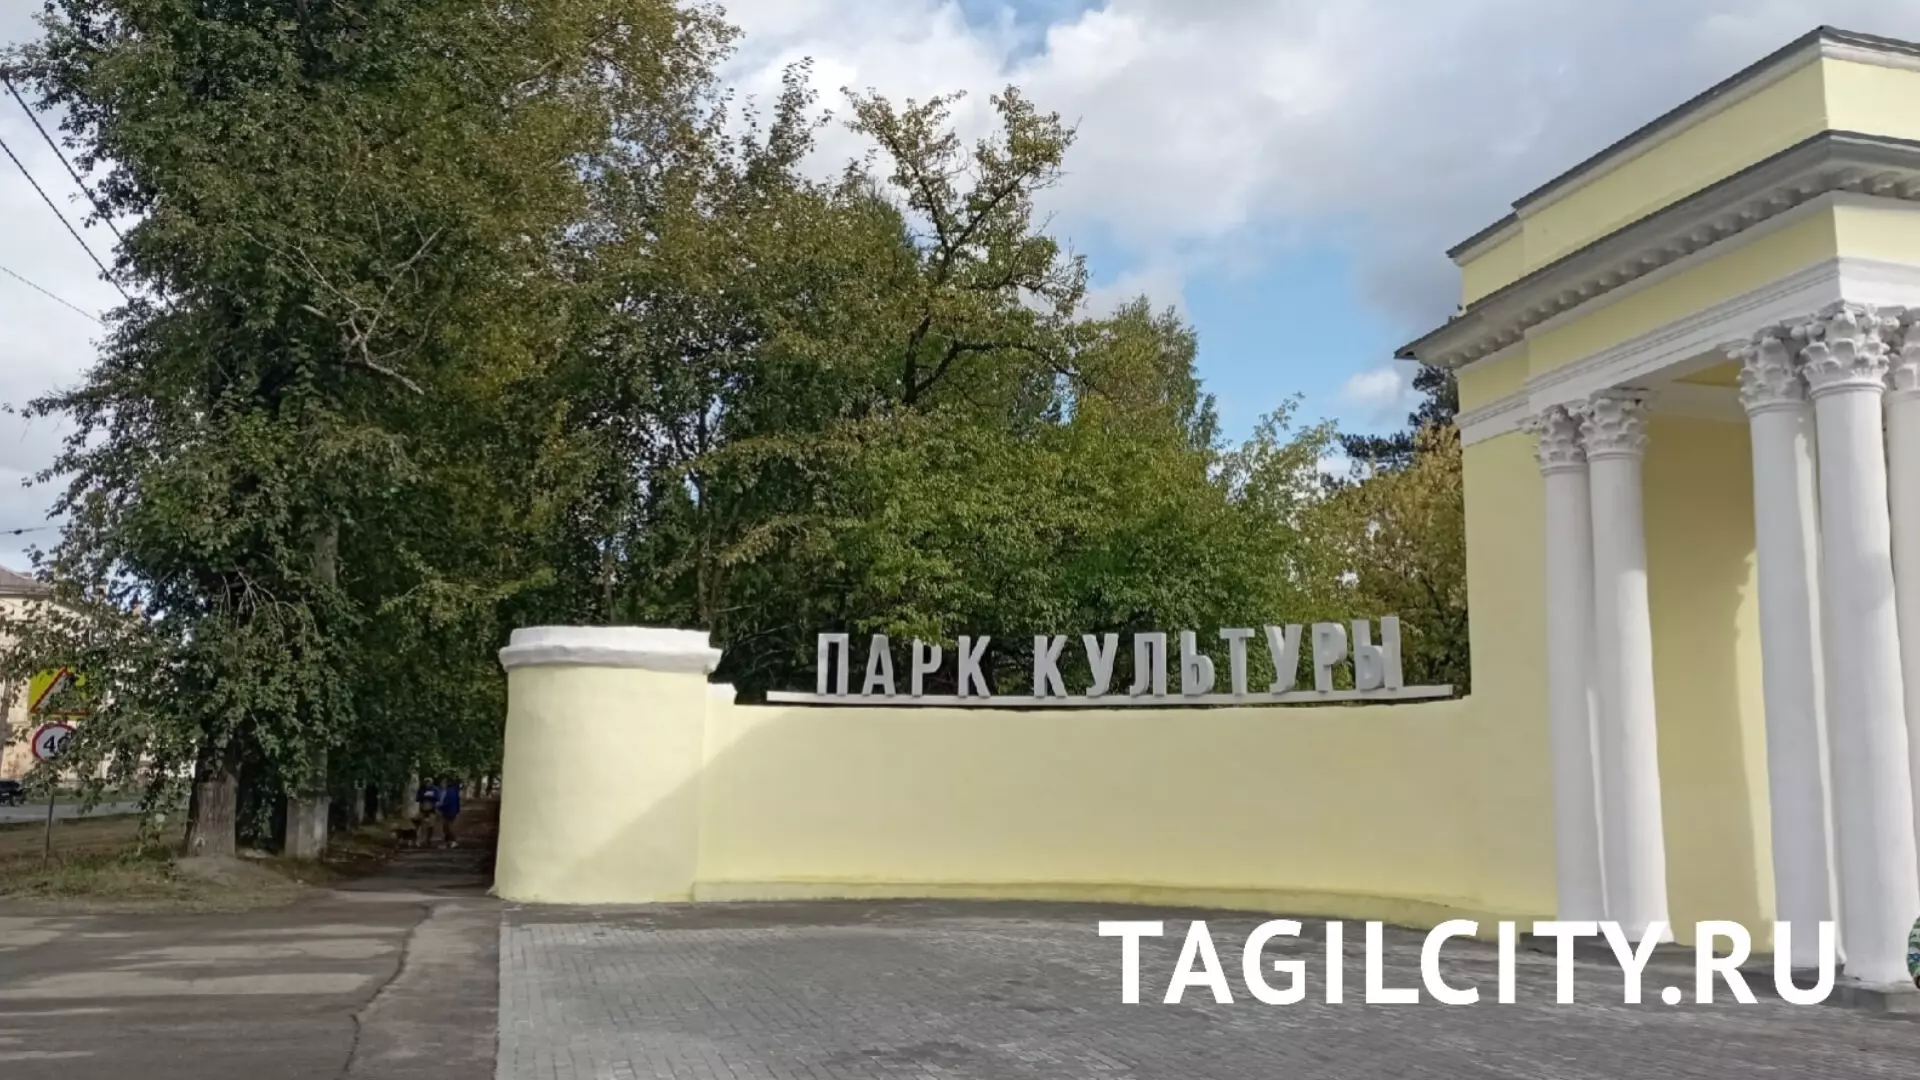 Главный вход в парк Металлургов Нижний Тагил